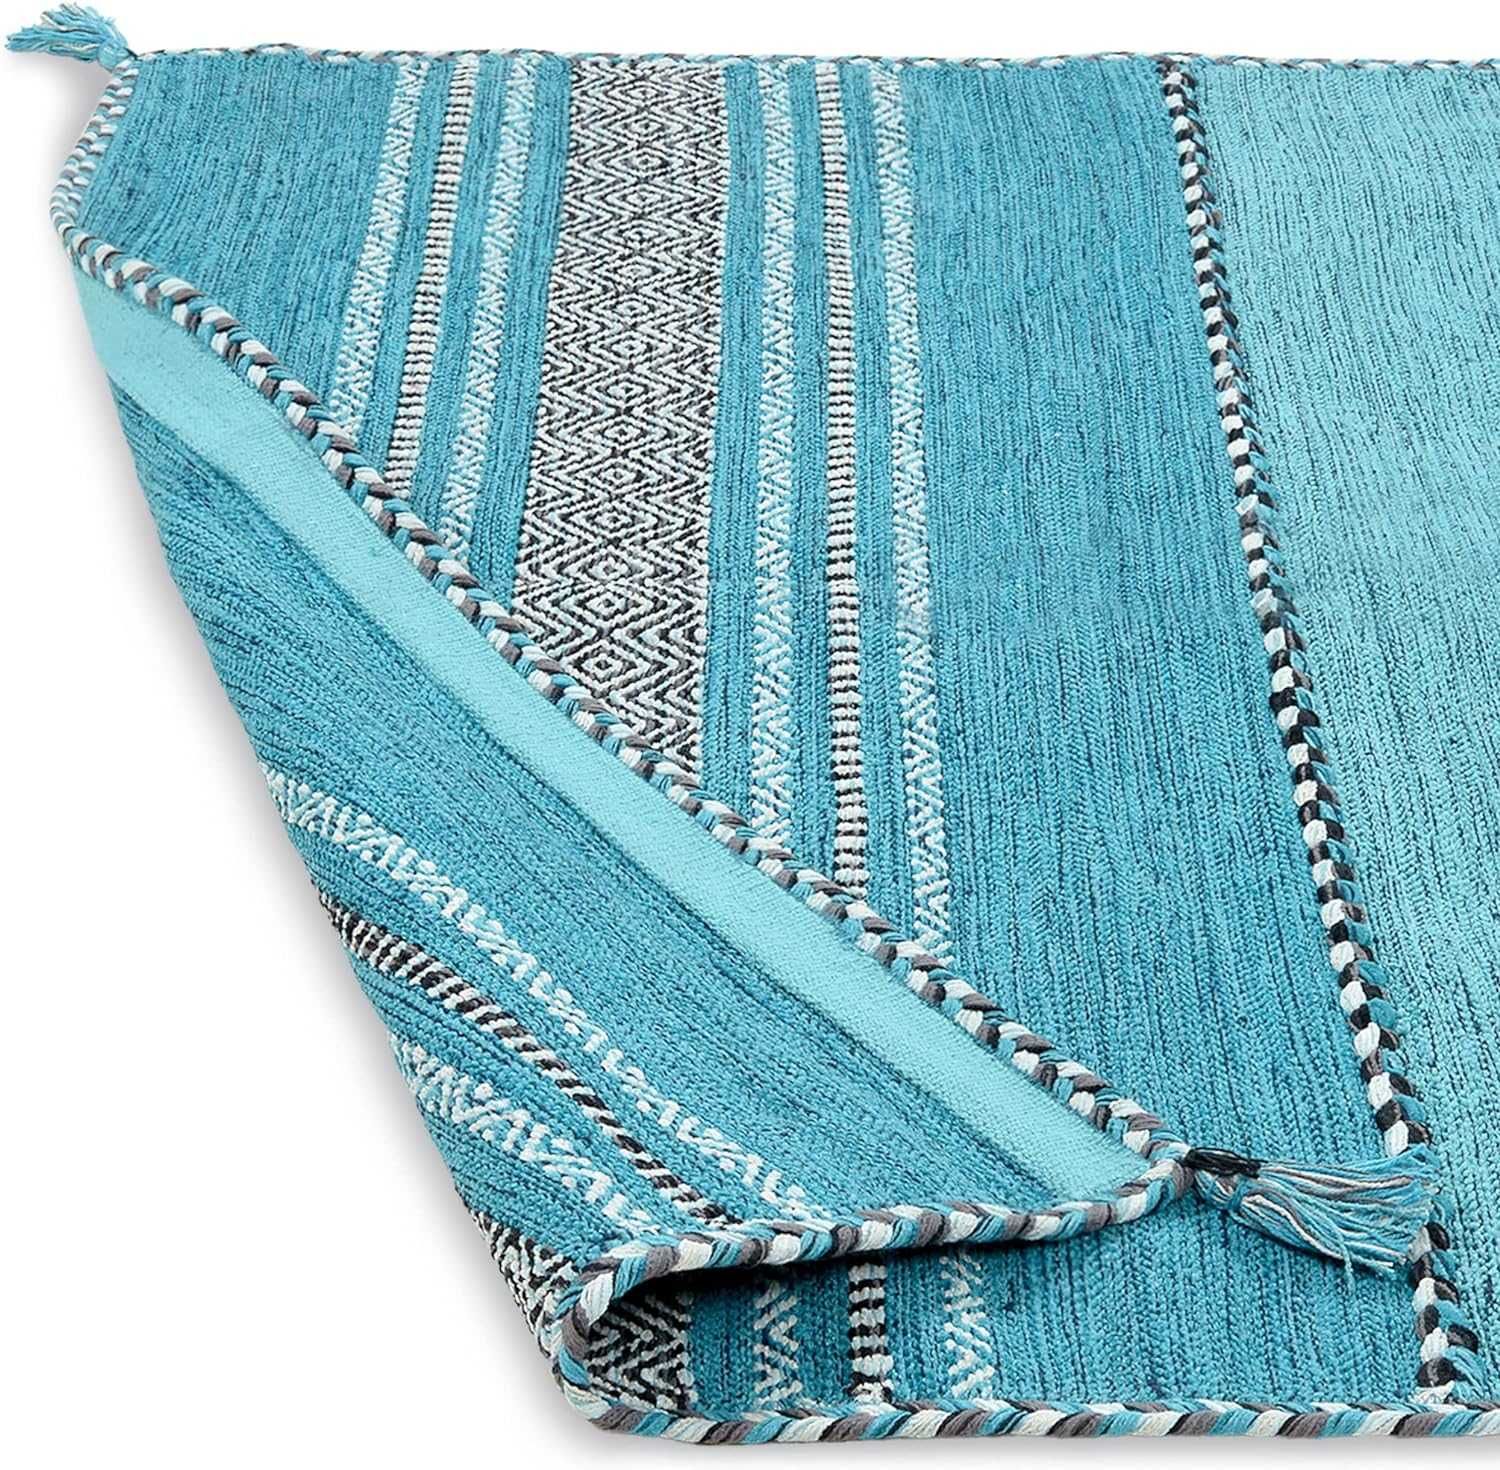 Ръчно тъкан килим 200X290Cm в сиво, морско синьо и кафяво, 100% памук